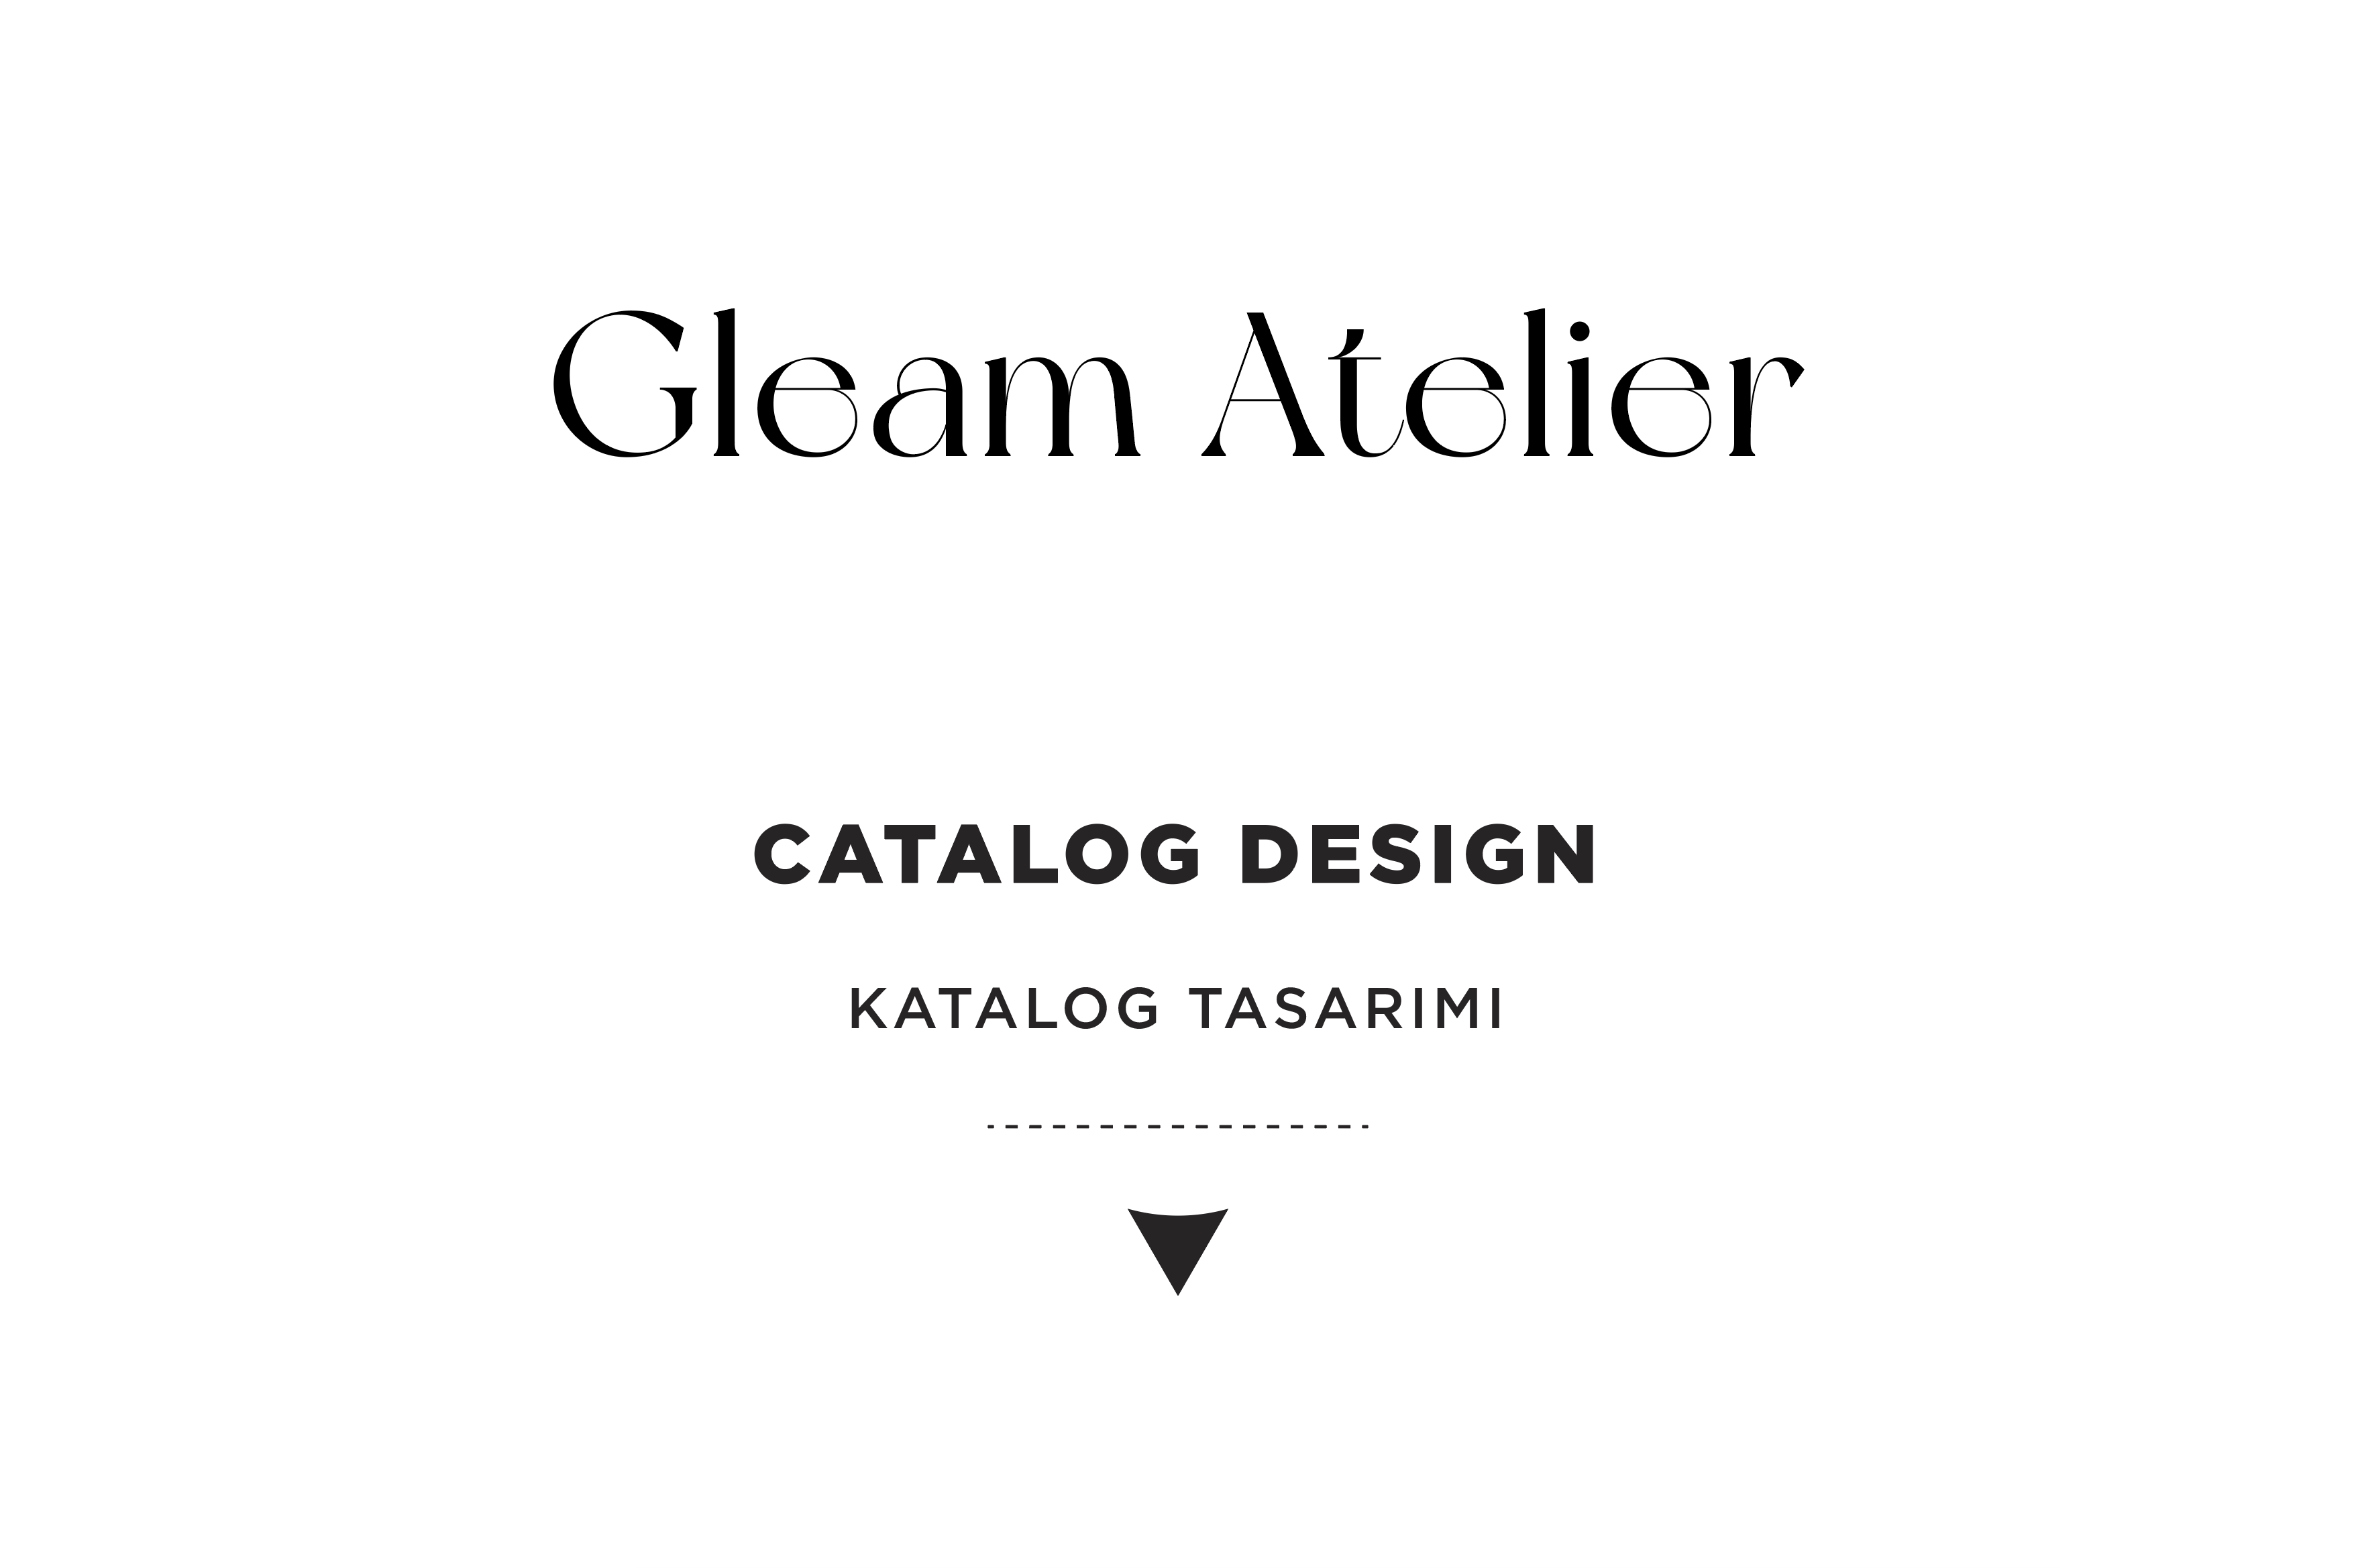 Gleam Atelier - Catalog Design